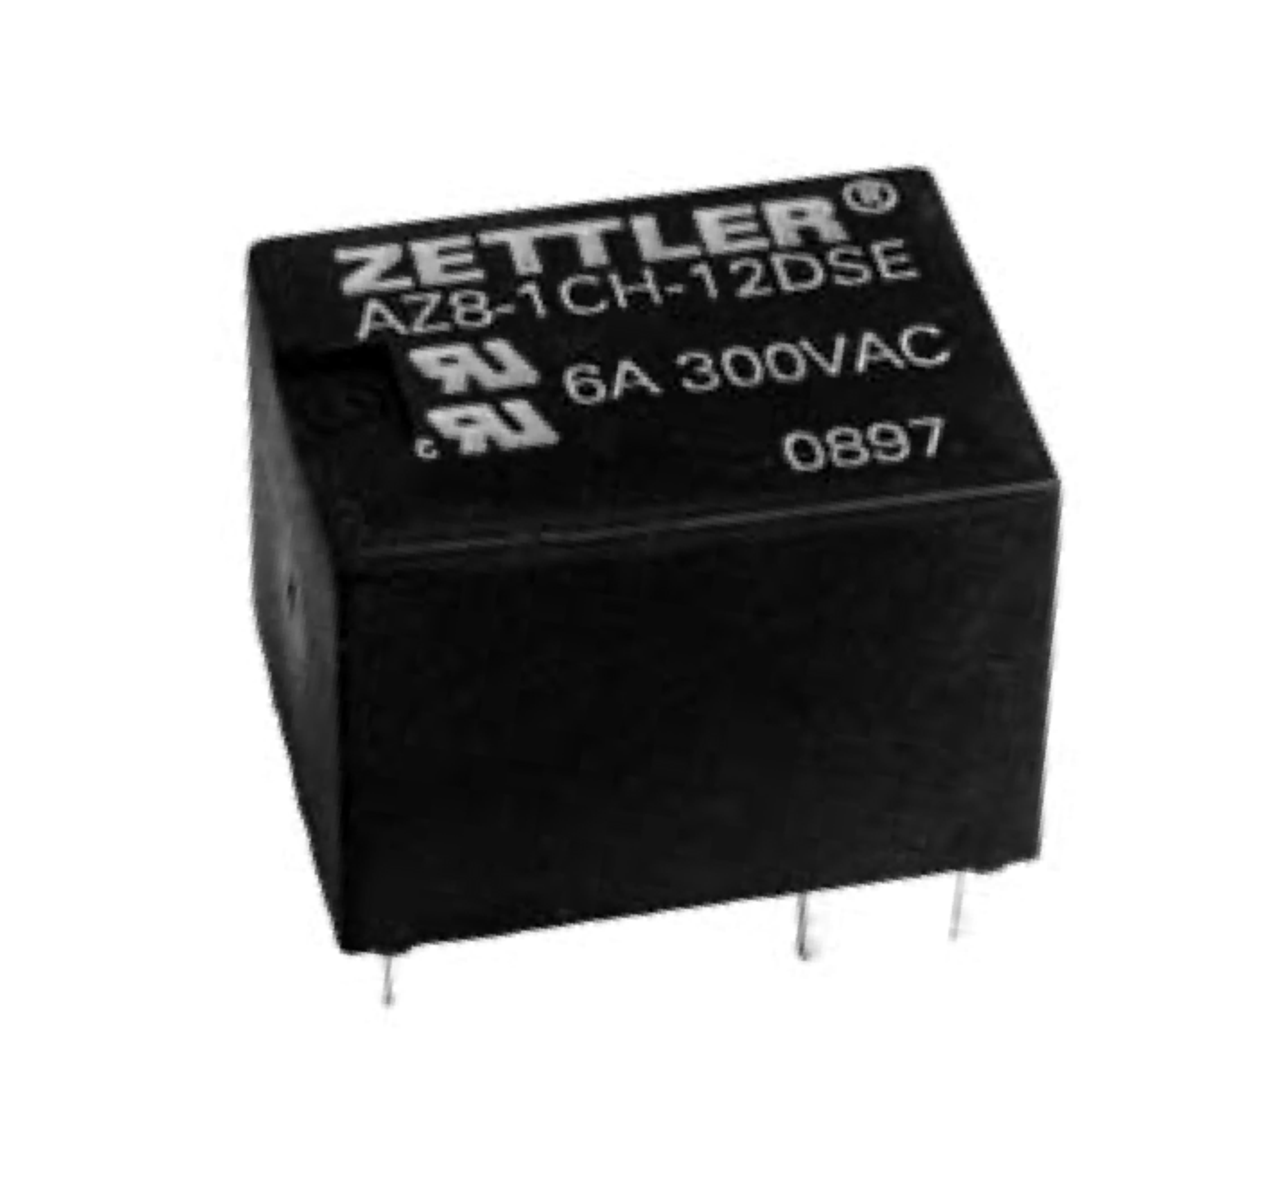 American Zettler AZ8-1CH-12DEF Power Relay